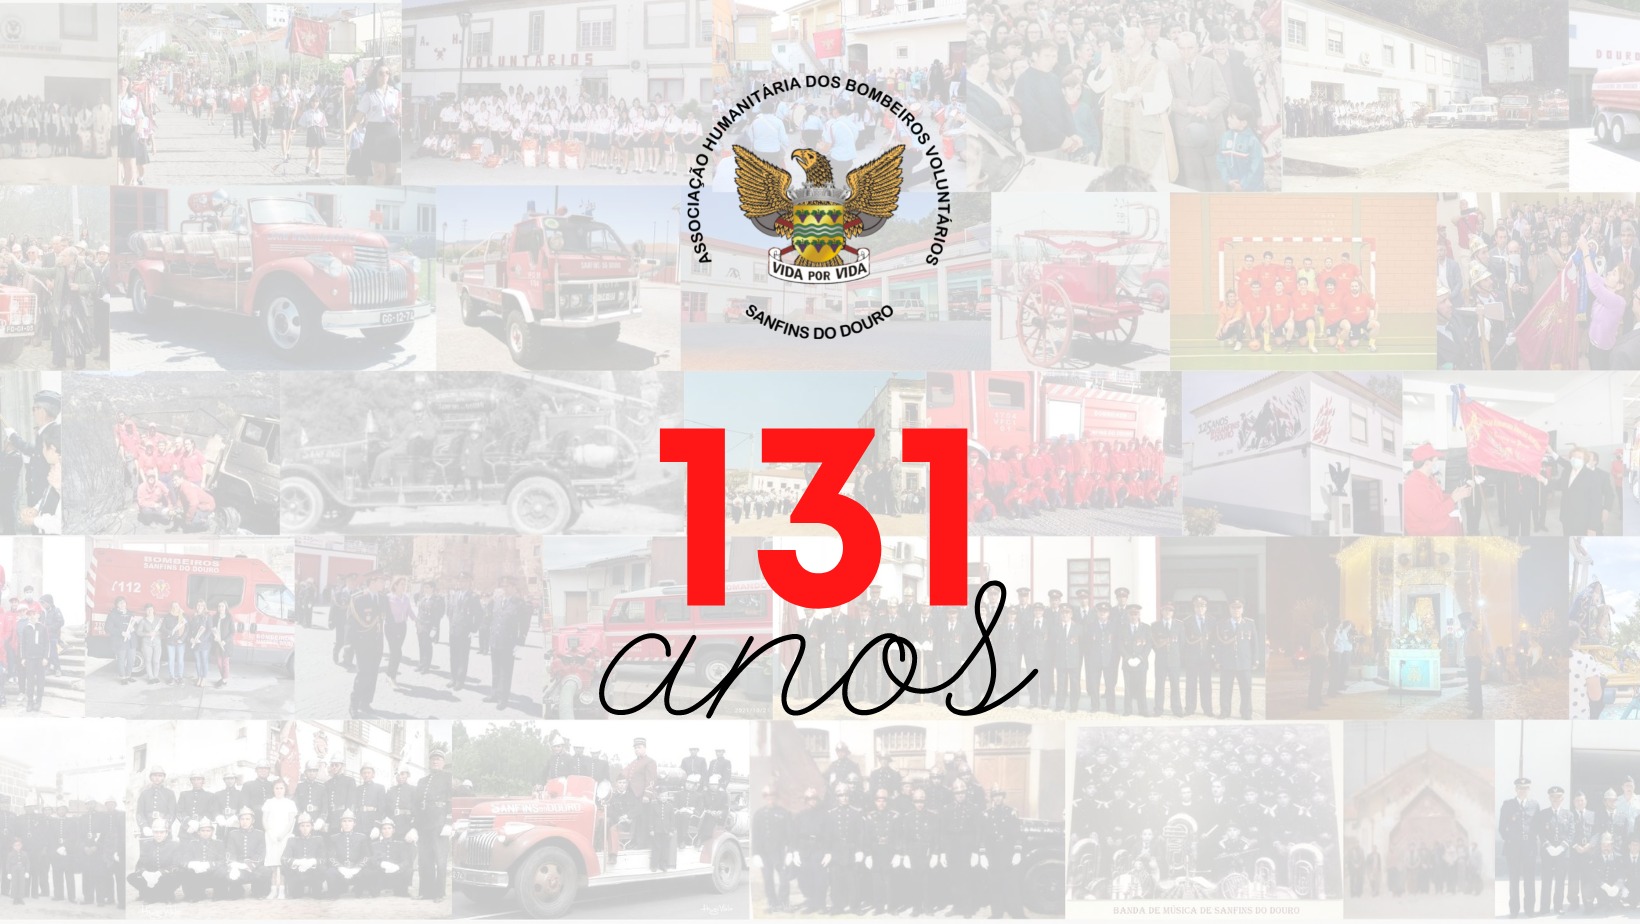 131º Aniversário da Associação Humanitária dos Bombeiros Voluntários de Sanfins do Douro